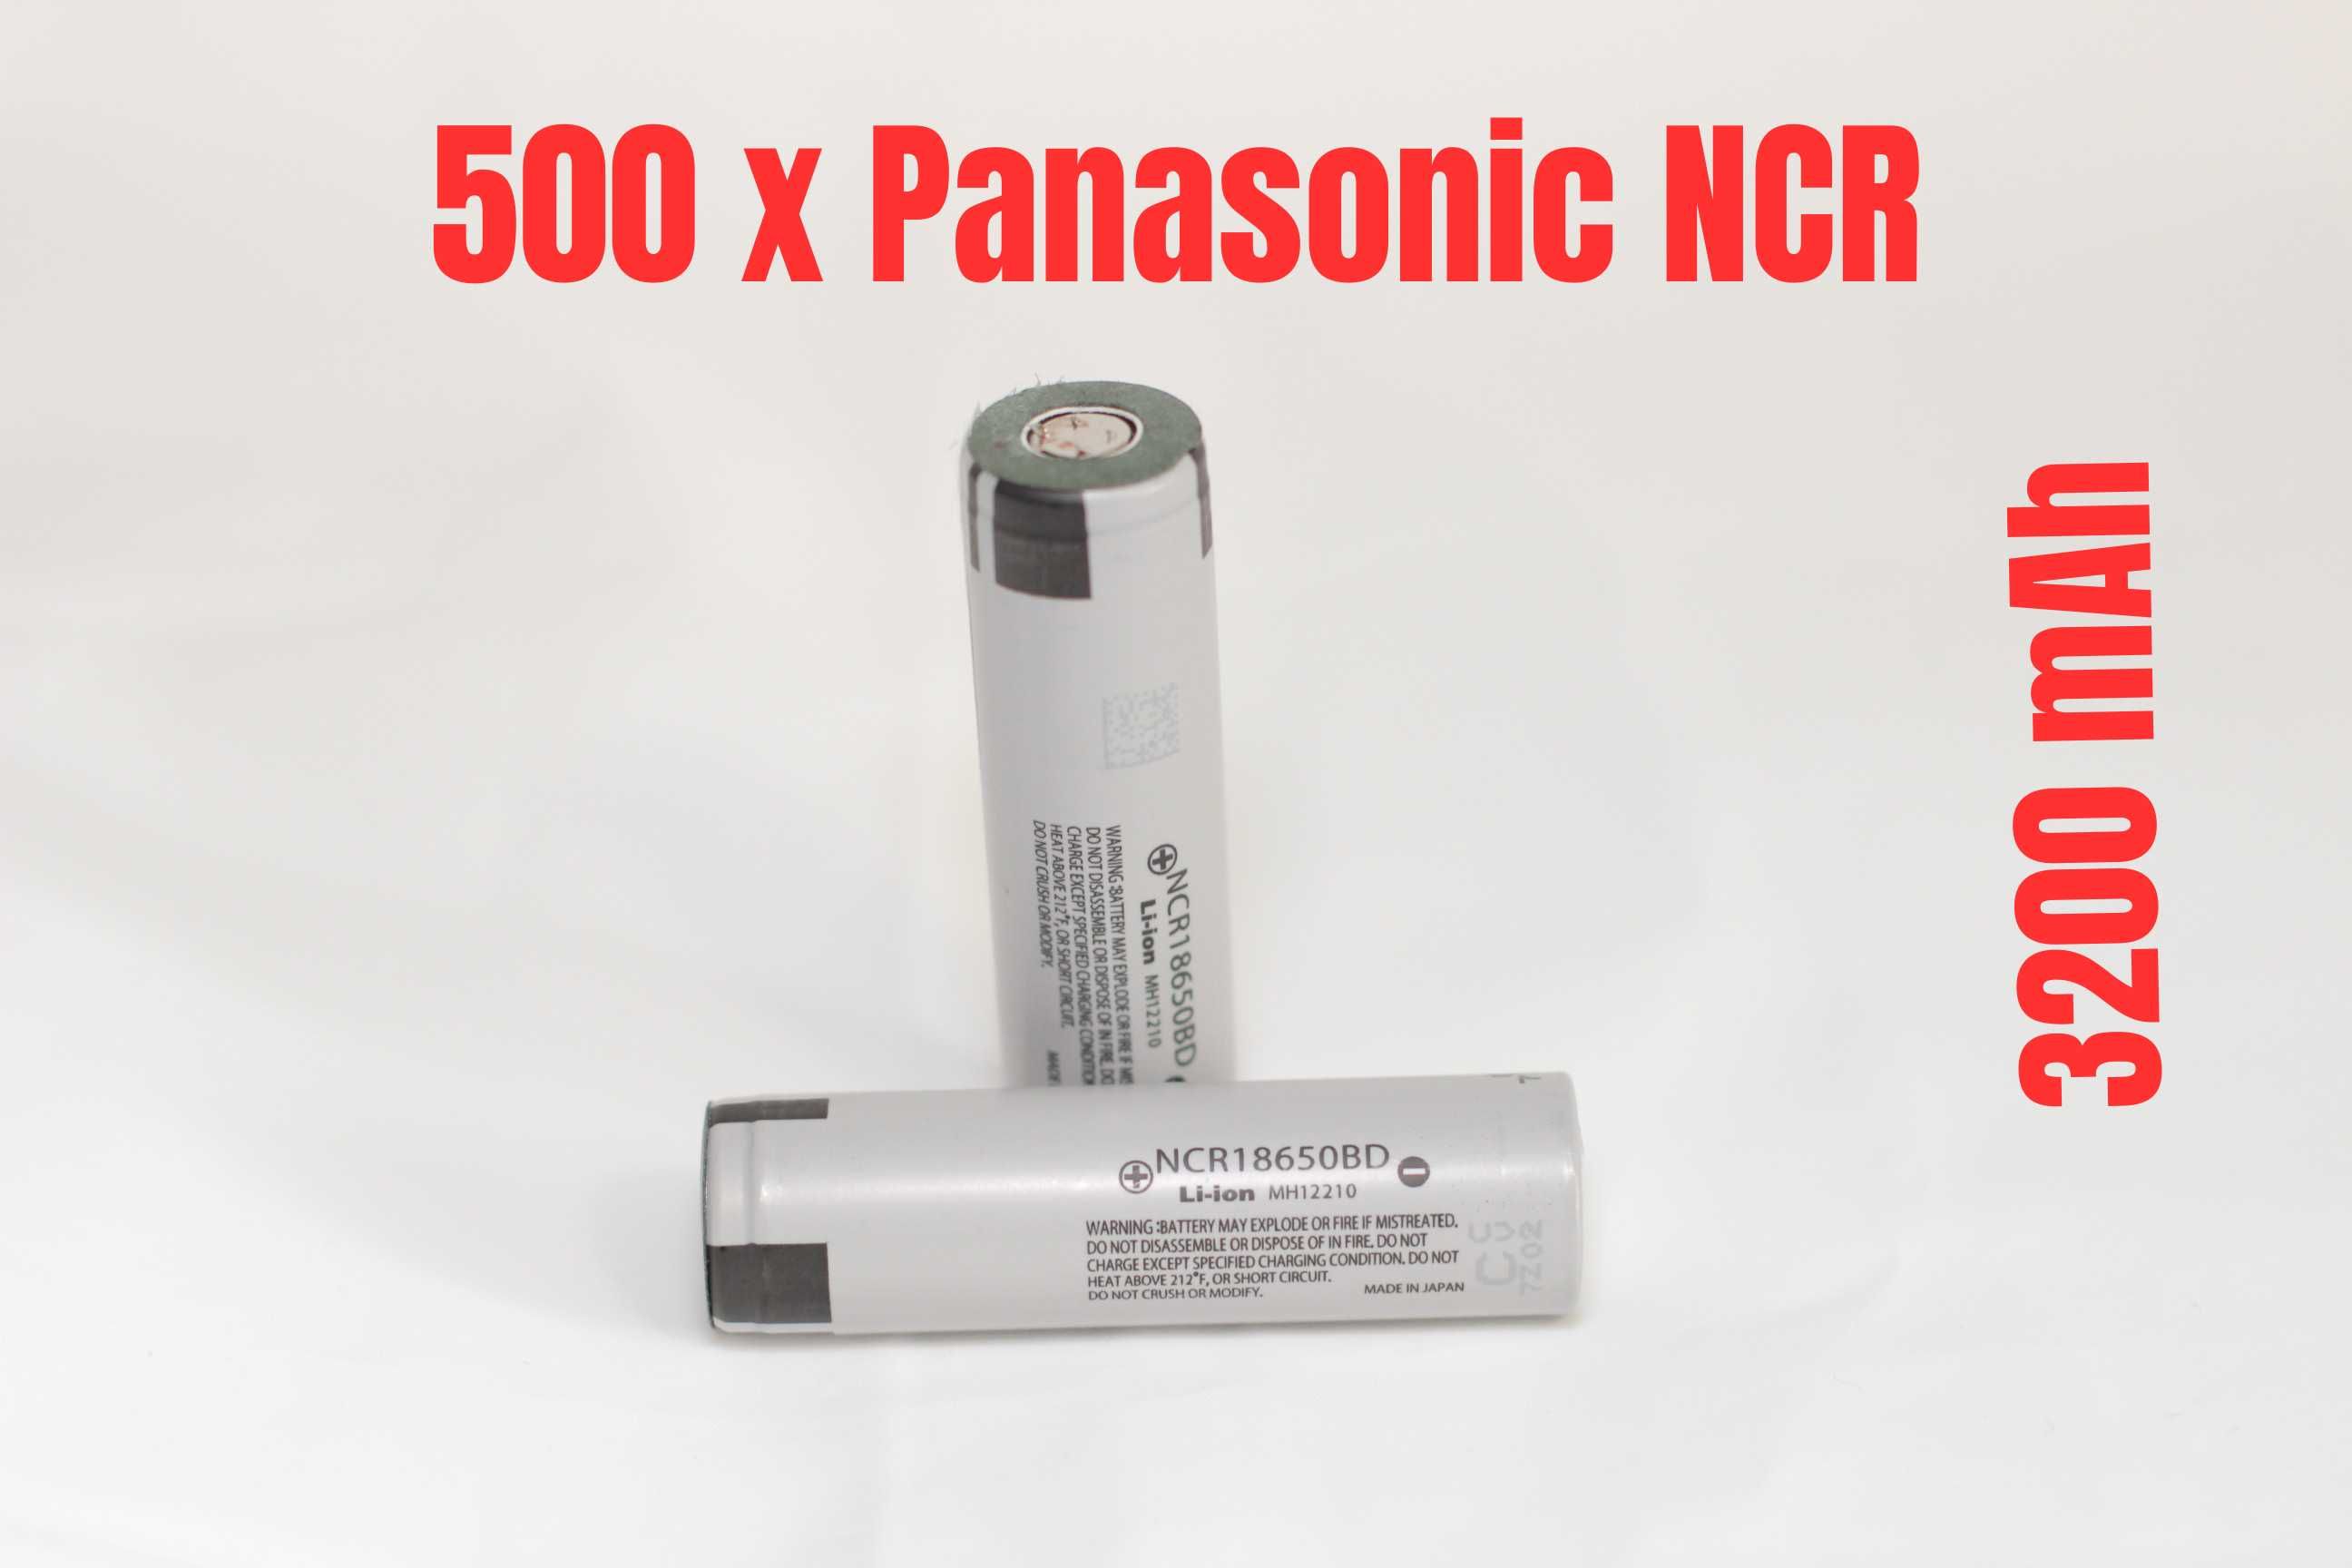 500 x Panasonic NCR 3200 mAh, 10A, factura si garantie